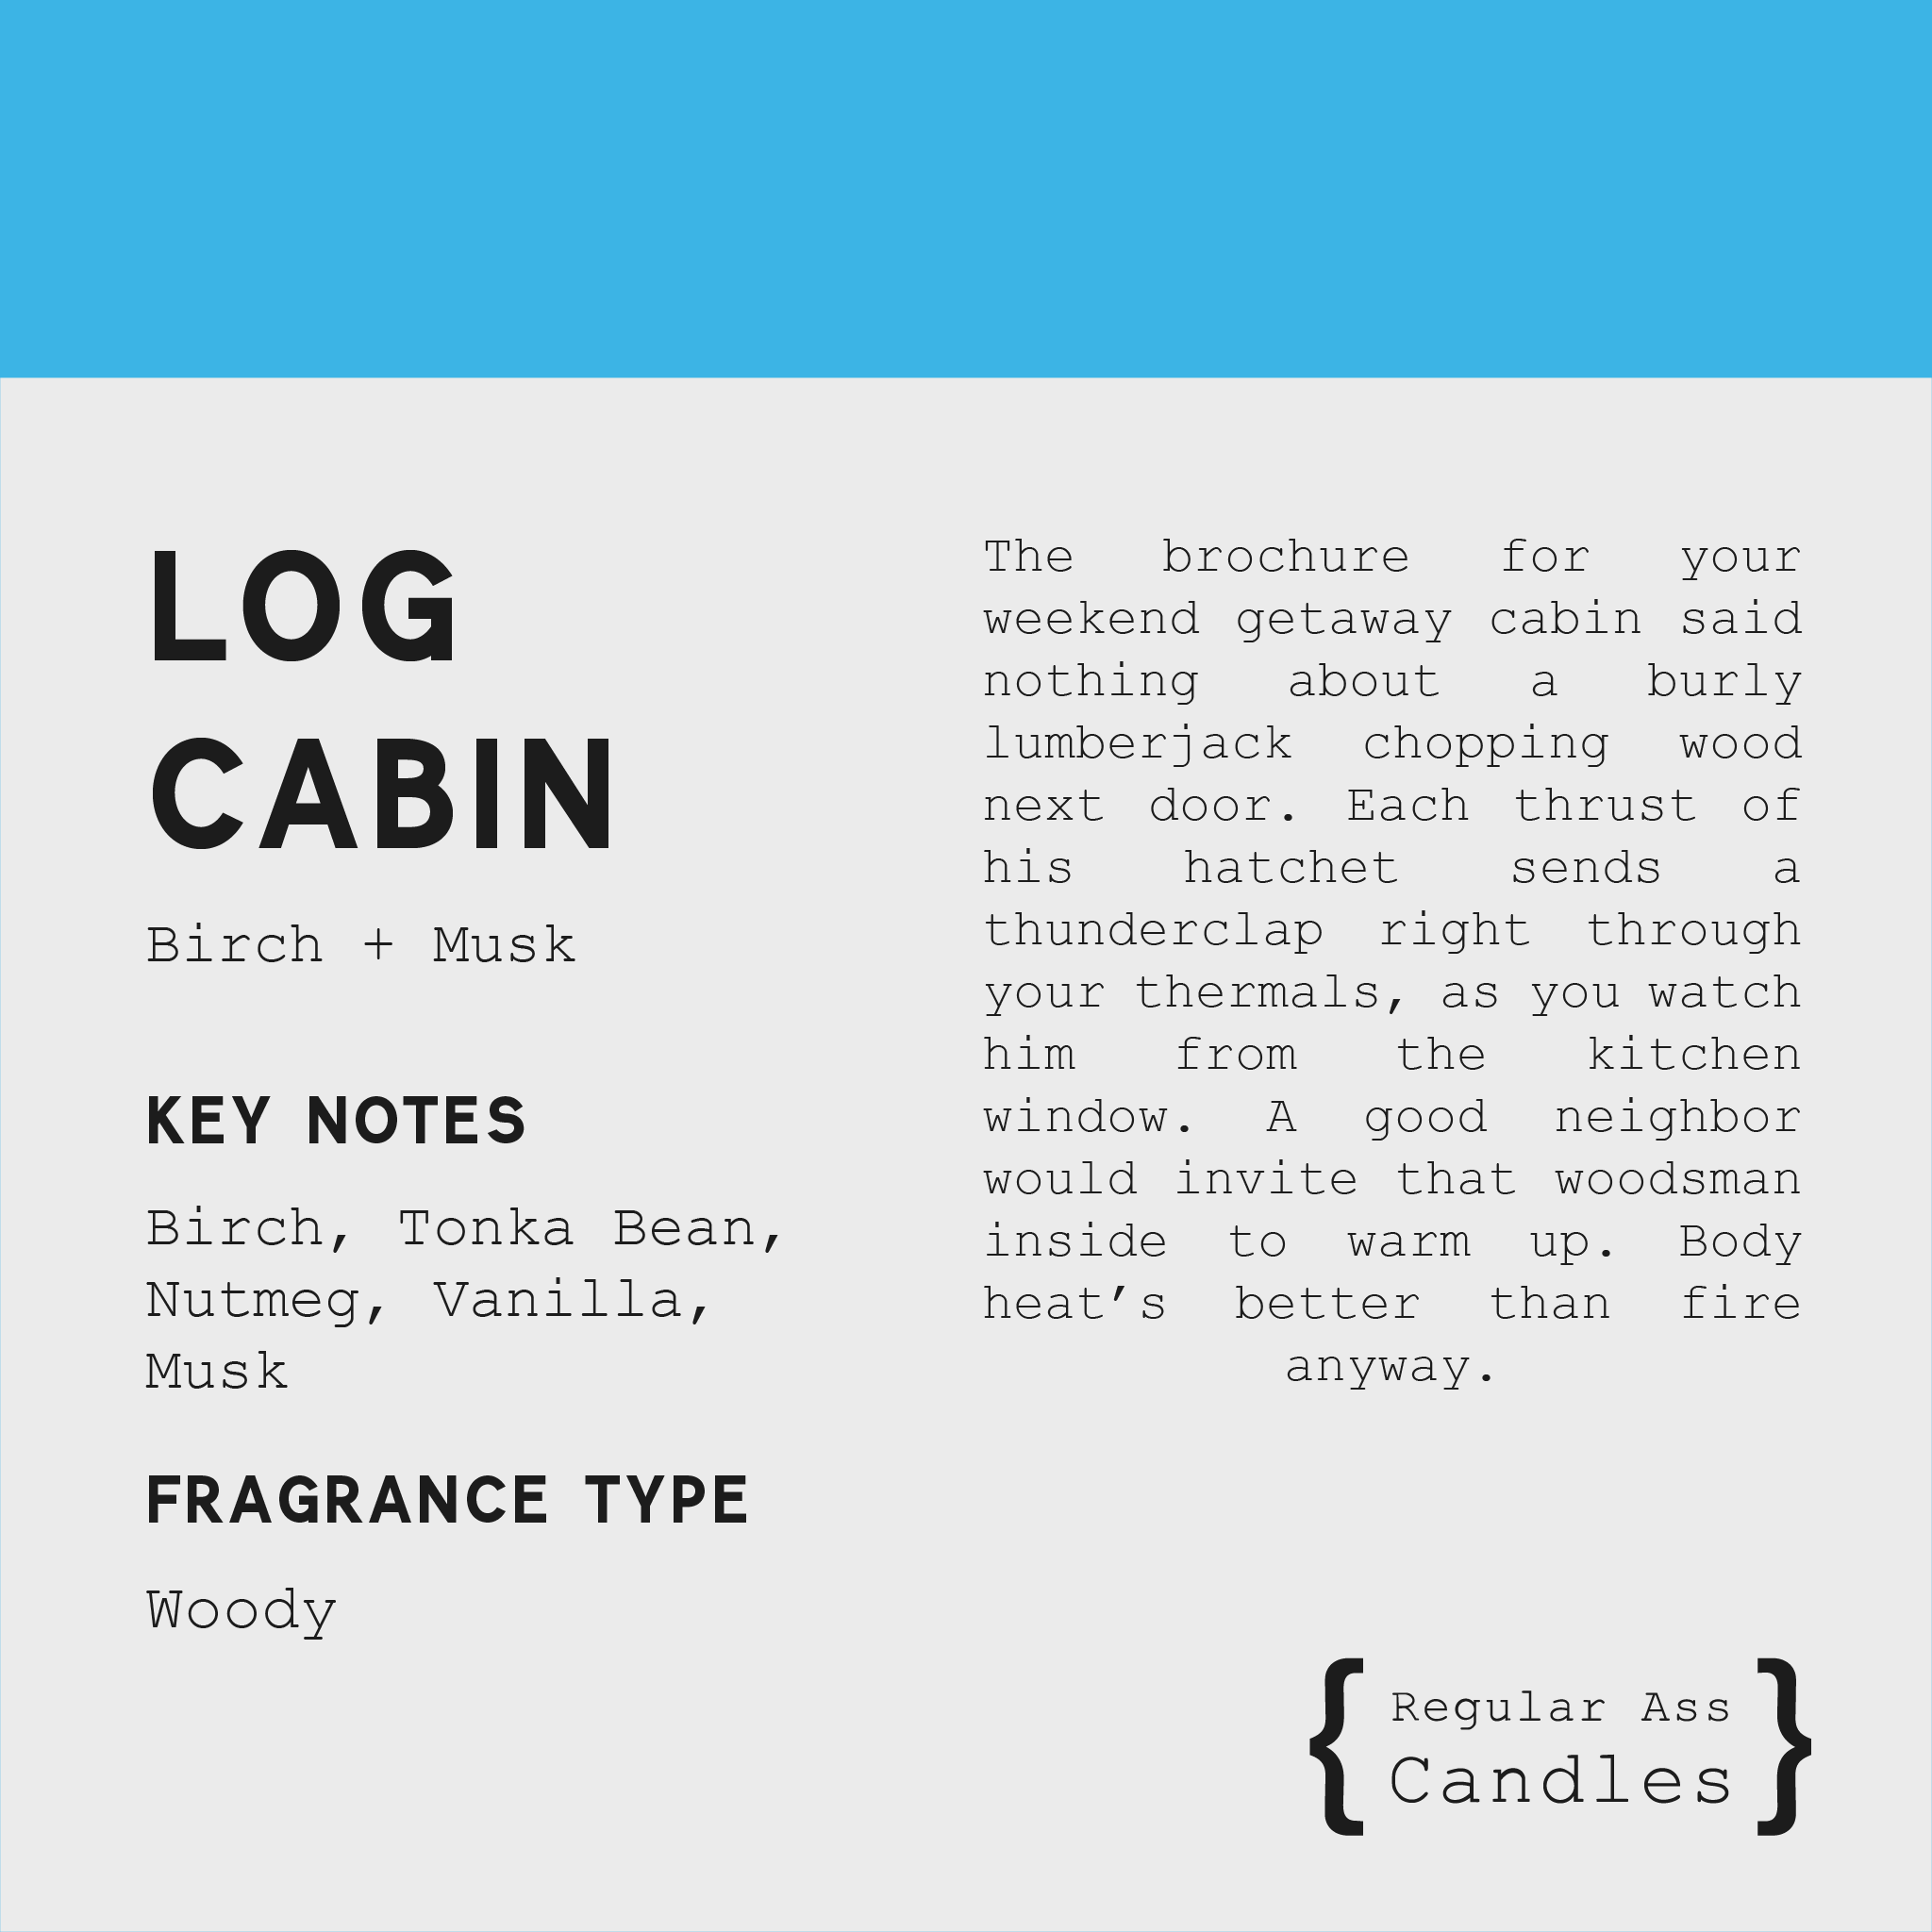 Log Cabin, Birch + Musk 11oz Candle